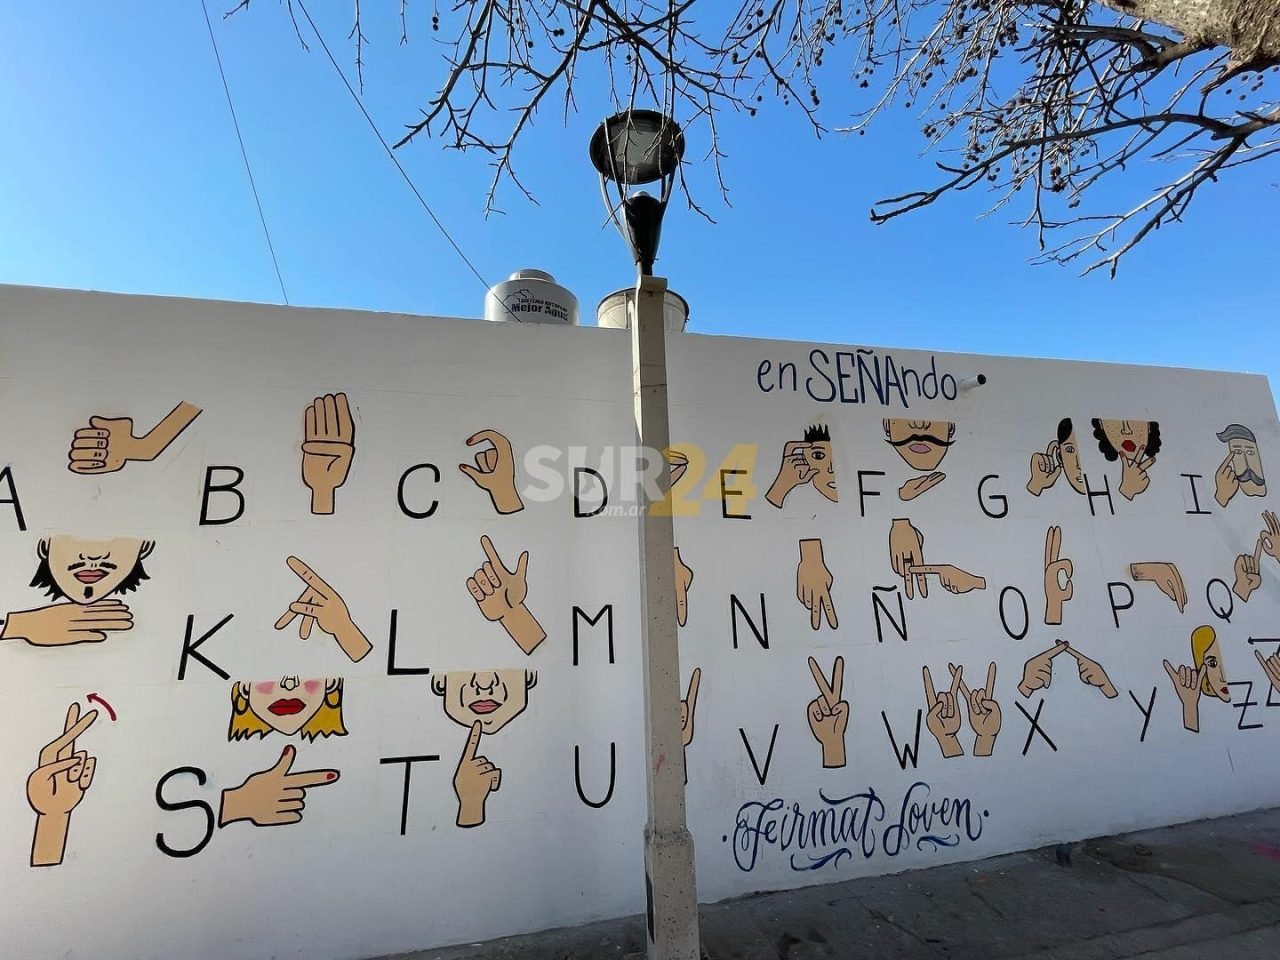 Arte e inclusión: el mural con el alfabeto de la lengua de señas, creado por artistas firmatenses